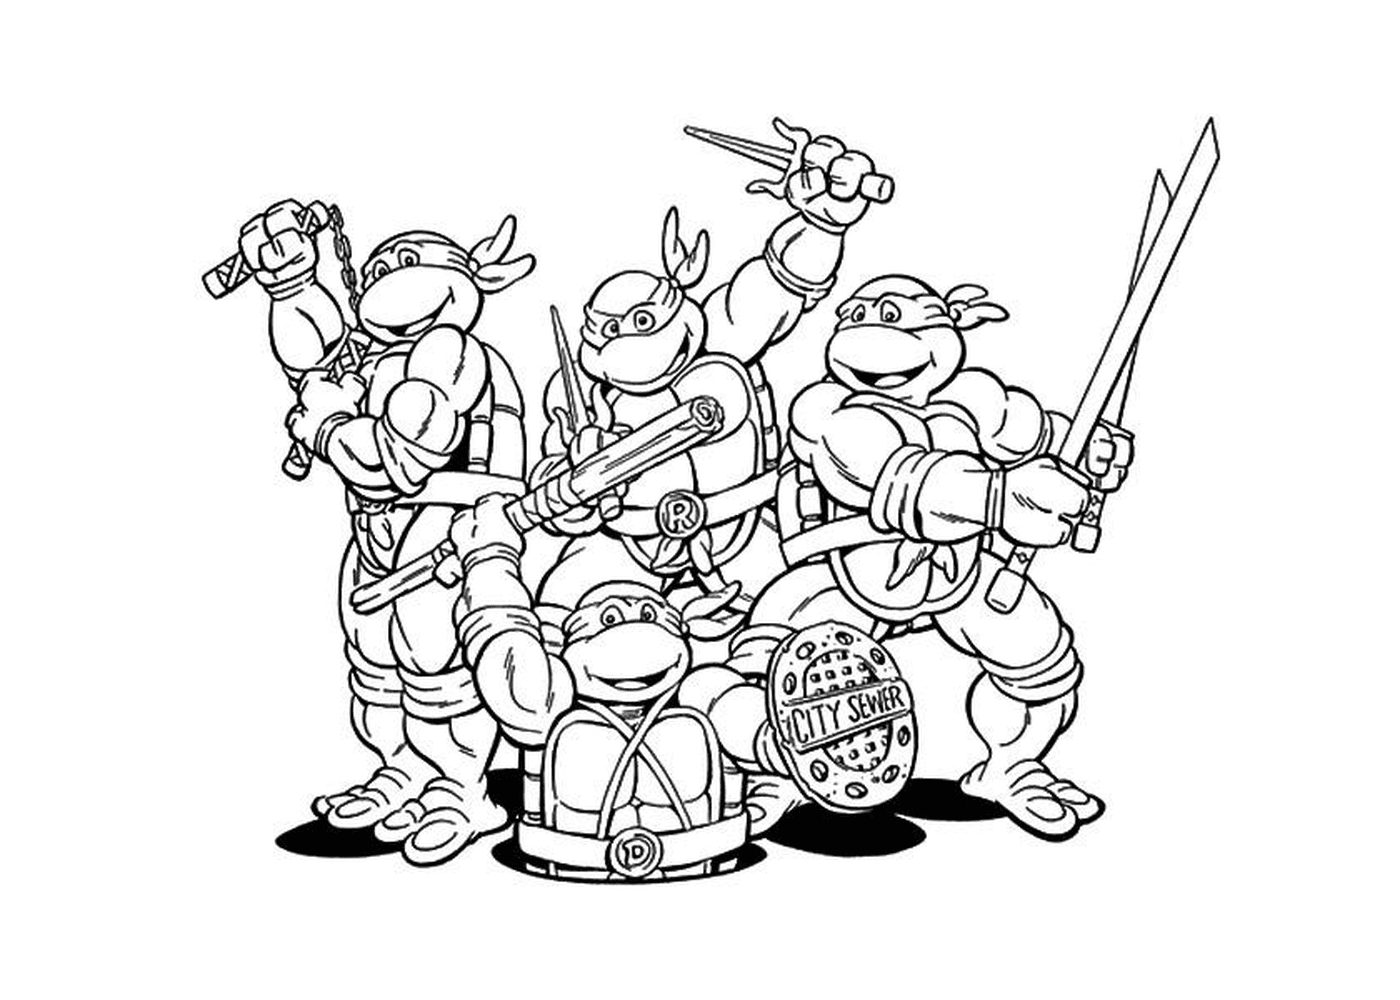   Groupe de tortues ninjas unies 